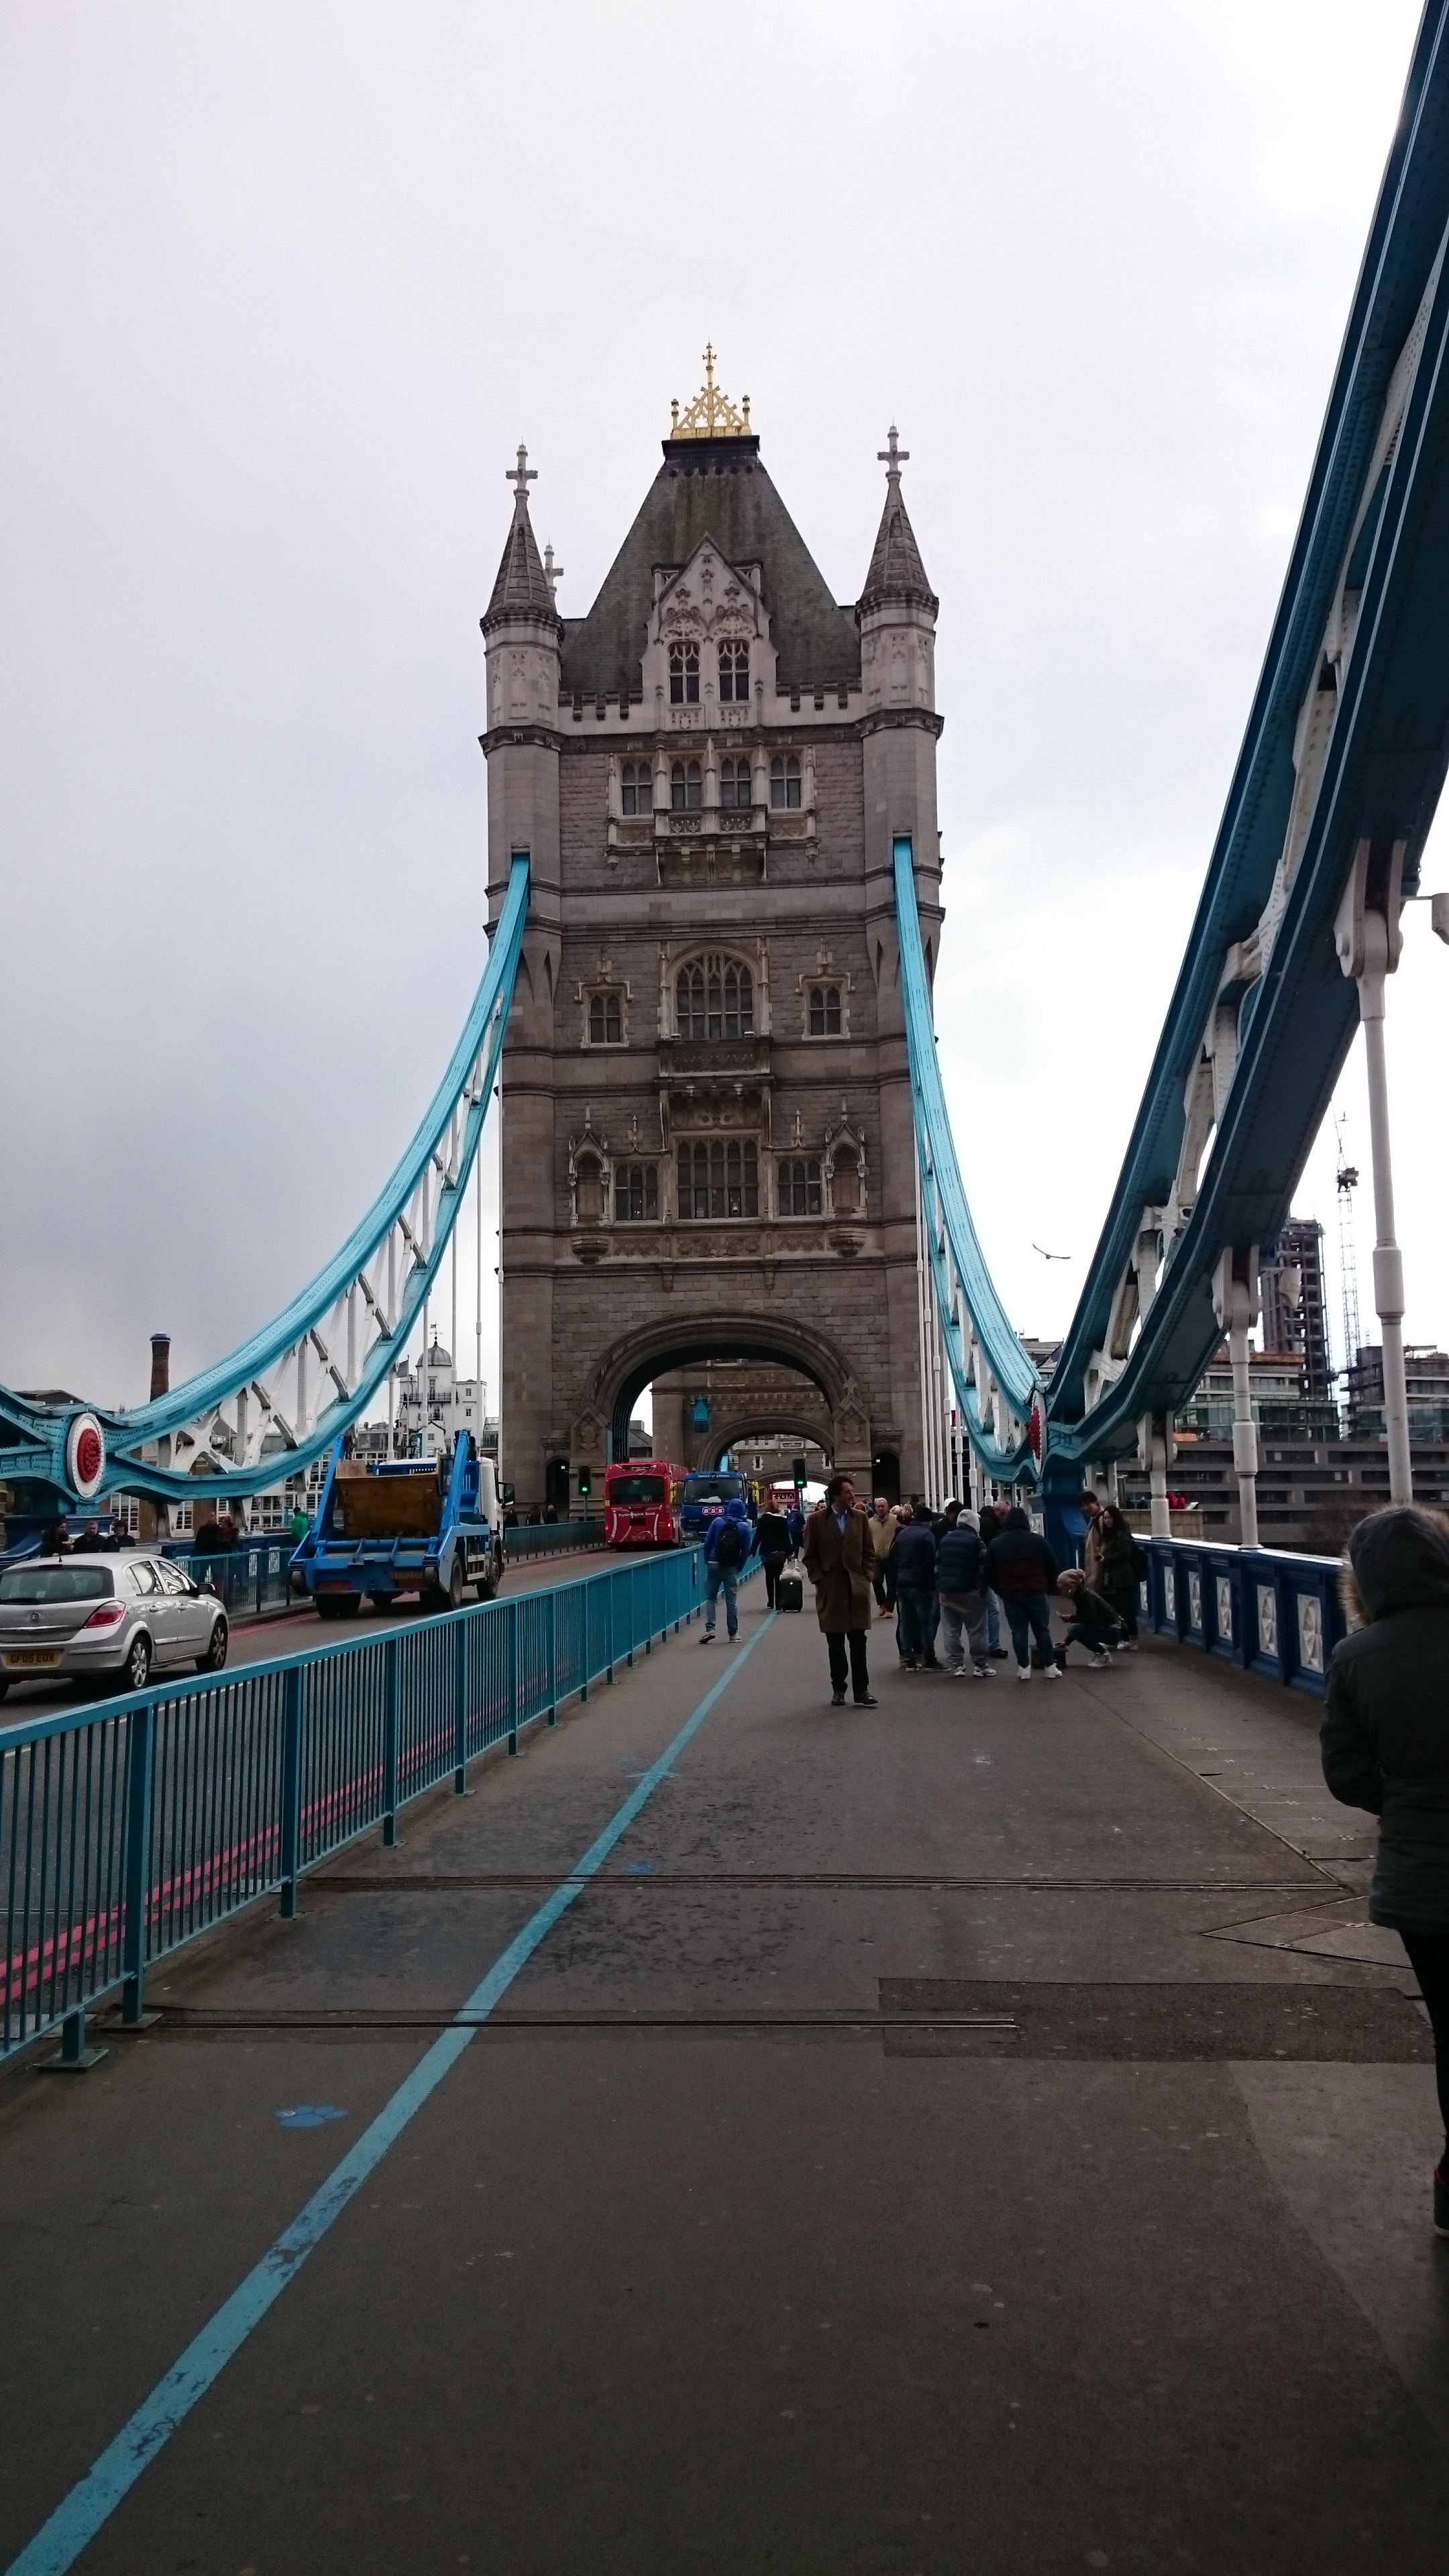 dsc 0692 - Una visita al Tower Bridge en Londres